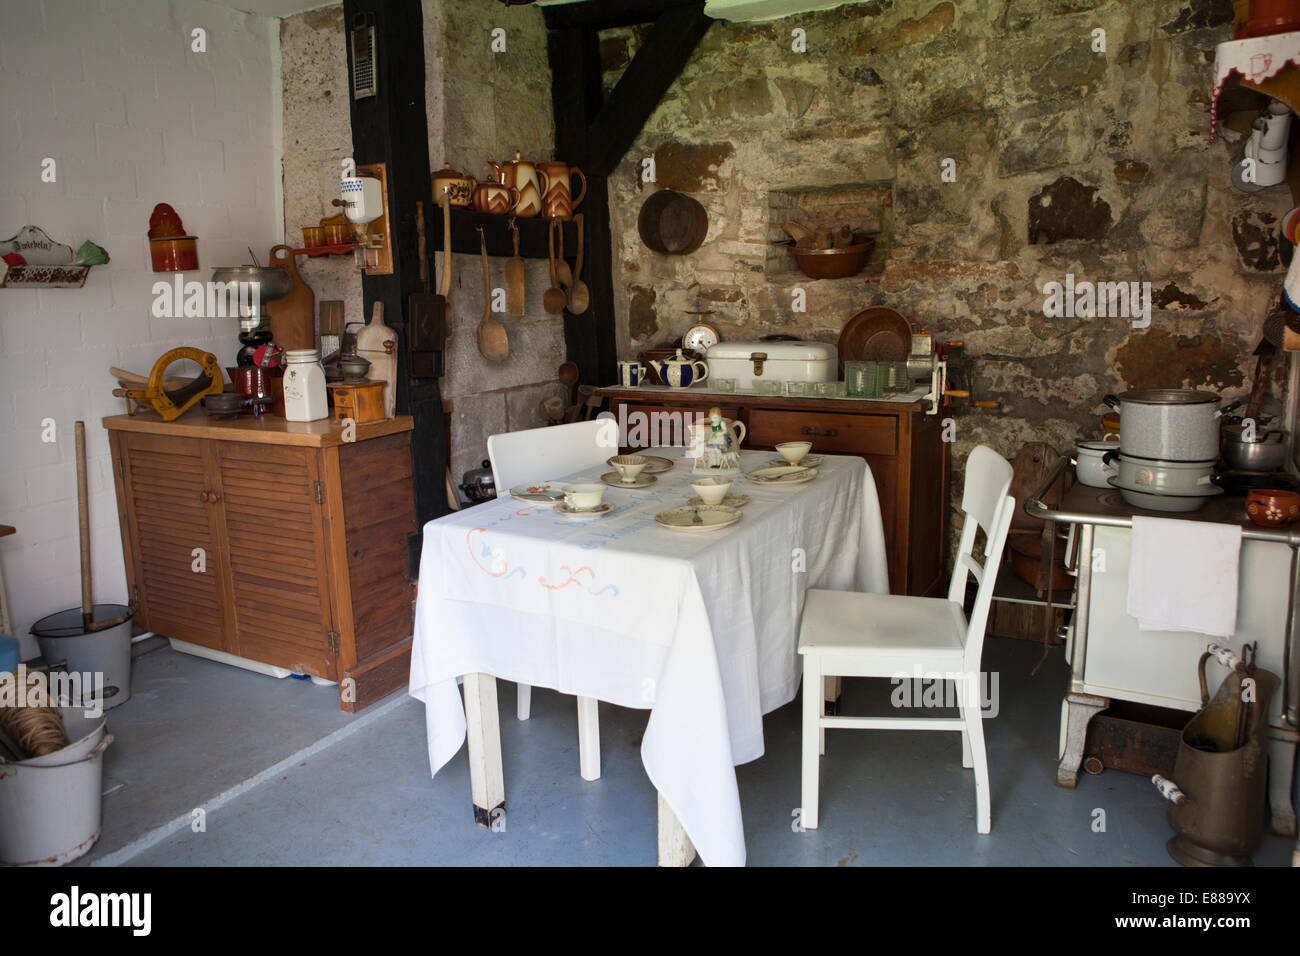 Museo, antica cucina cortile interno del castello rovina, Coppenbrügge, Bassa Sassonia, Germania, Europa Foto Stock